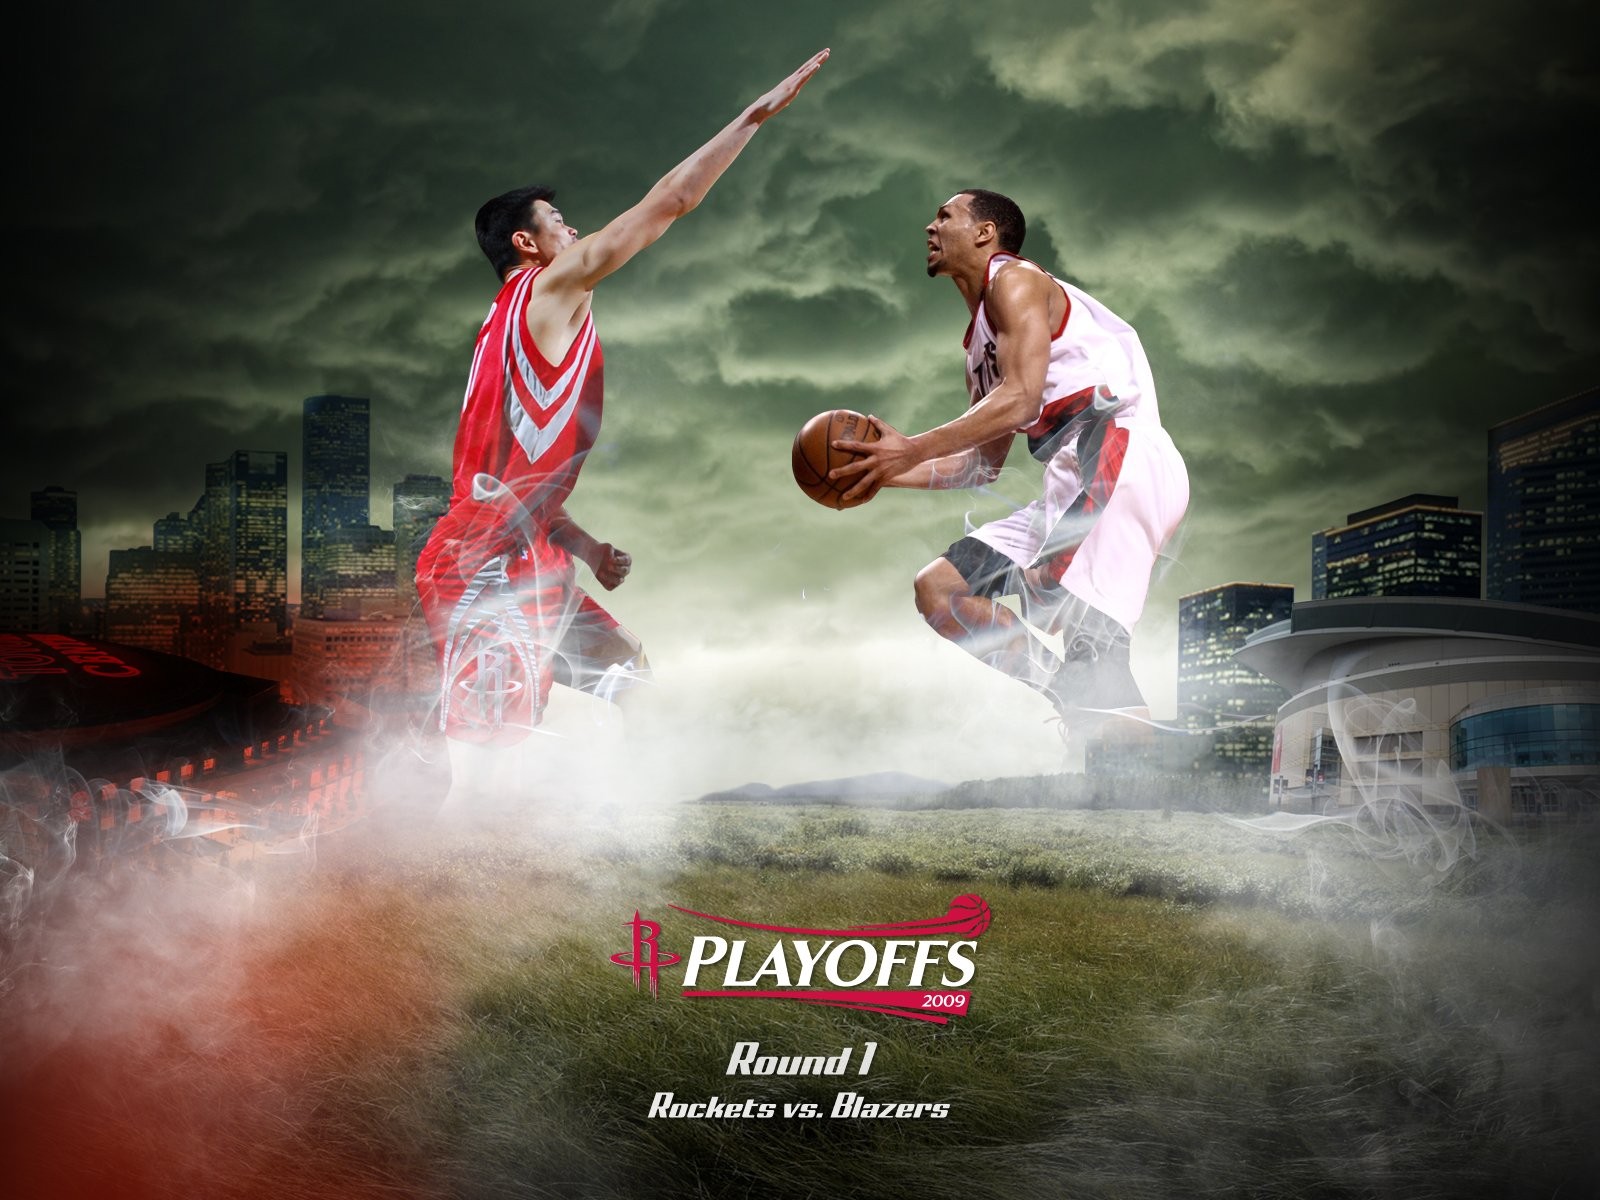 NBA Houston Rockets 2009 fondos de escritorio de los playoffs #1 - 1600x1200